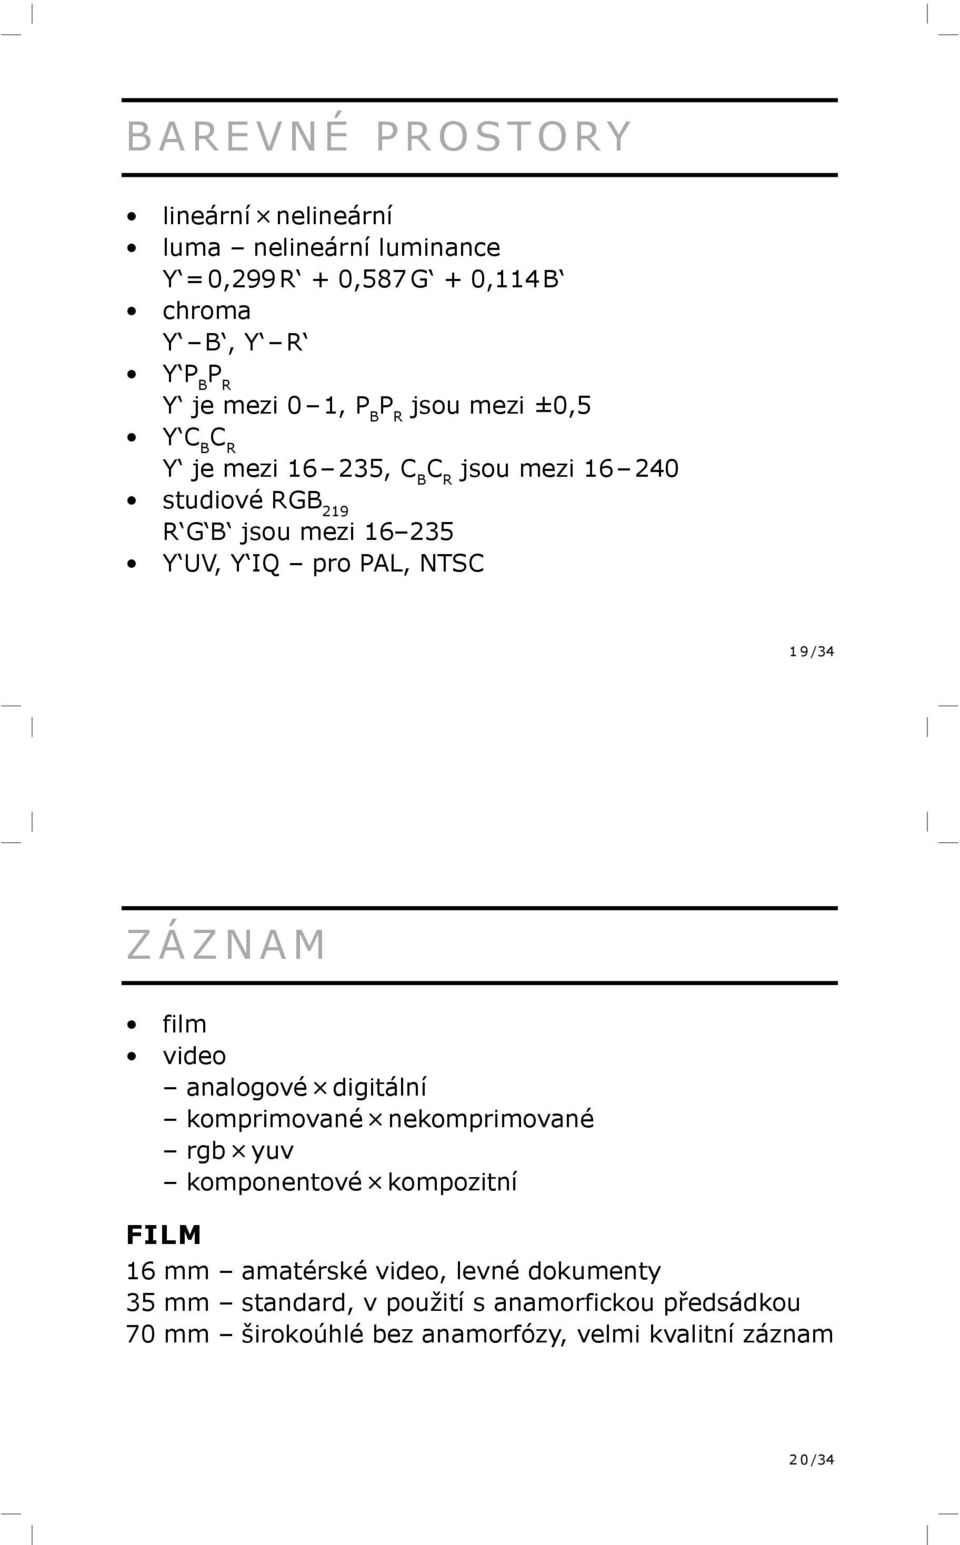 NTSC 1 9 /34 ZÁZNAM film video analogové digitální komprimované nekomprimované rgb yuv komponentové kompozitní FILM 16 mm amatérské